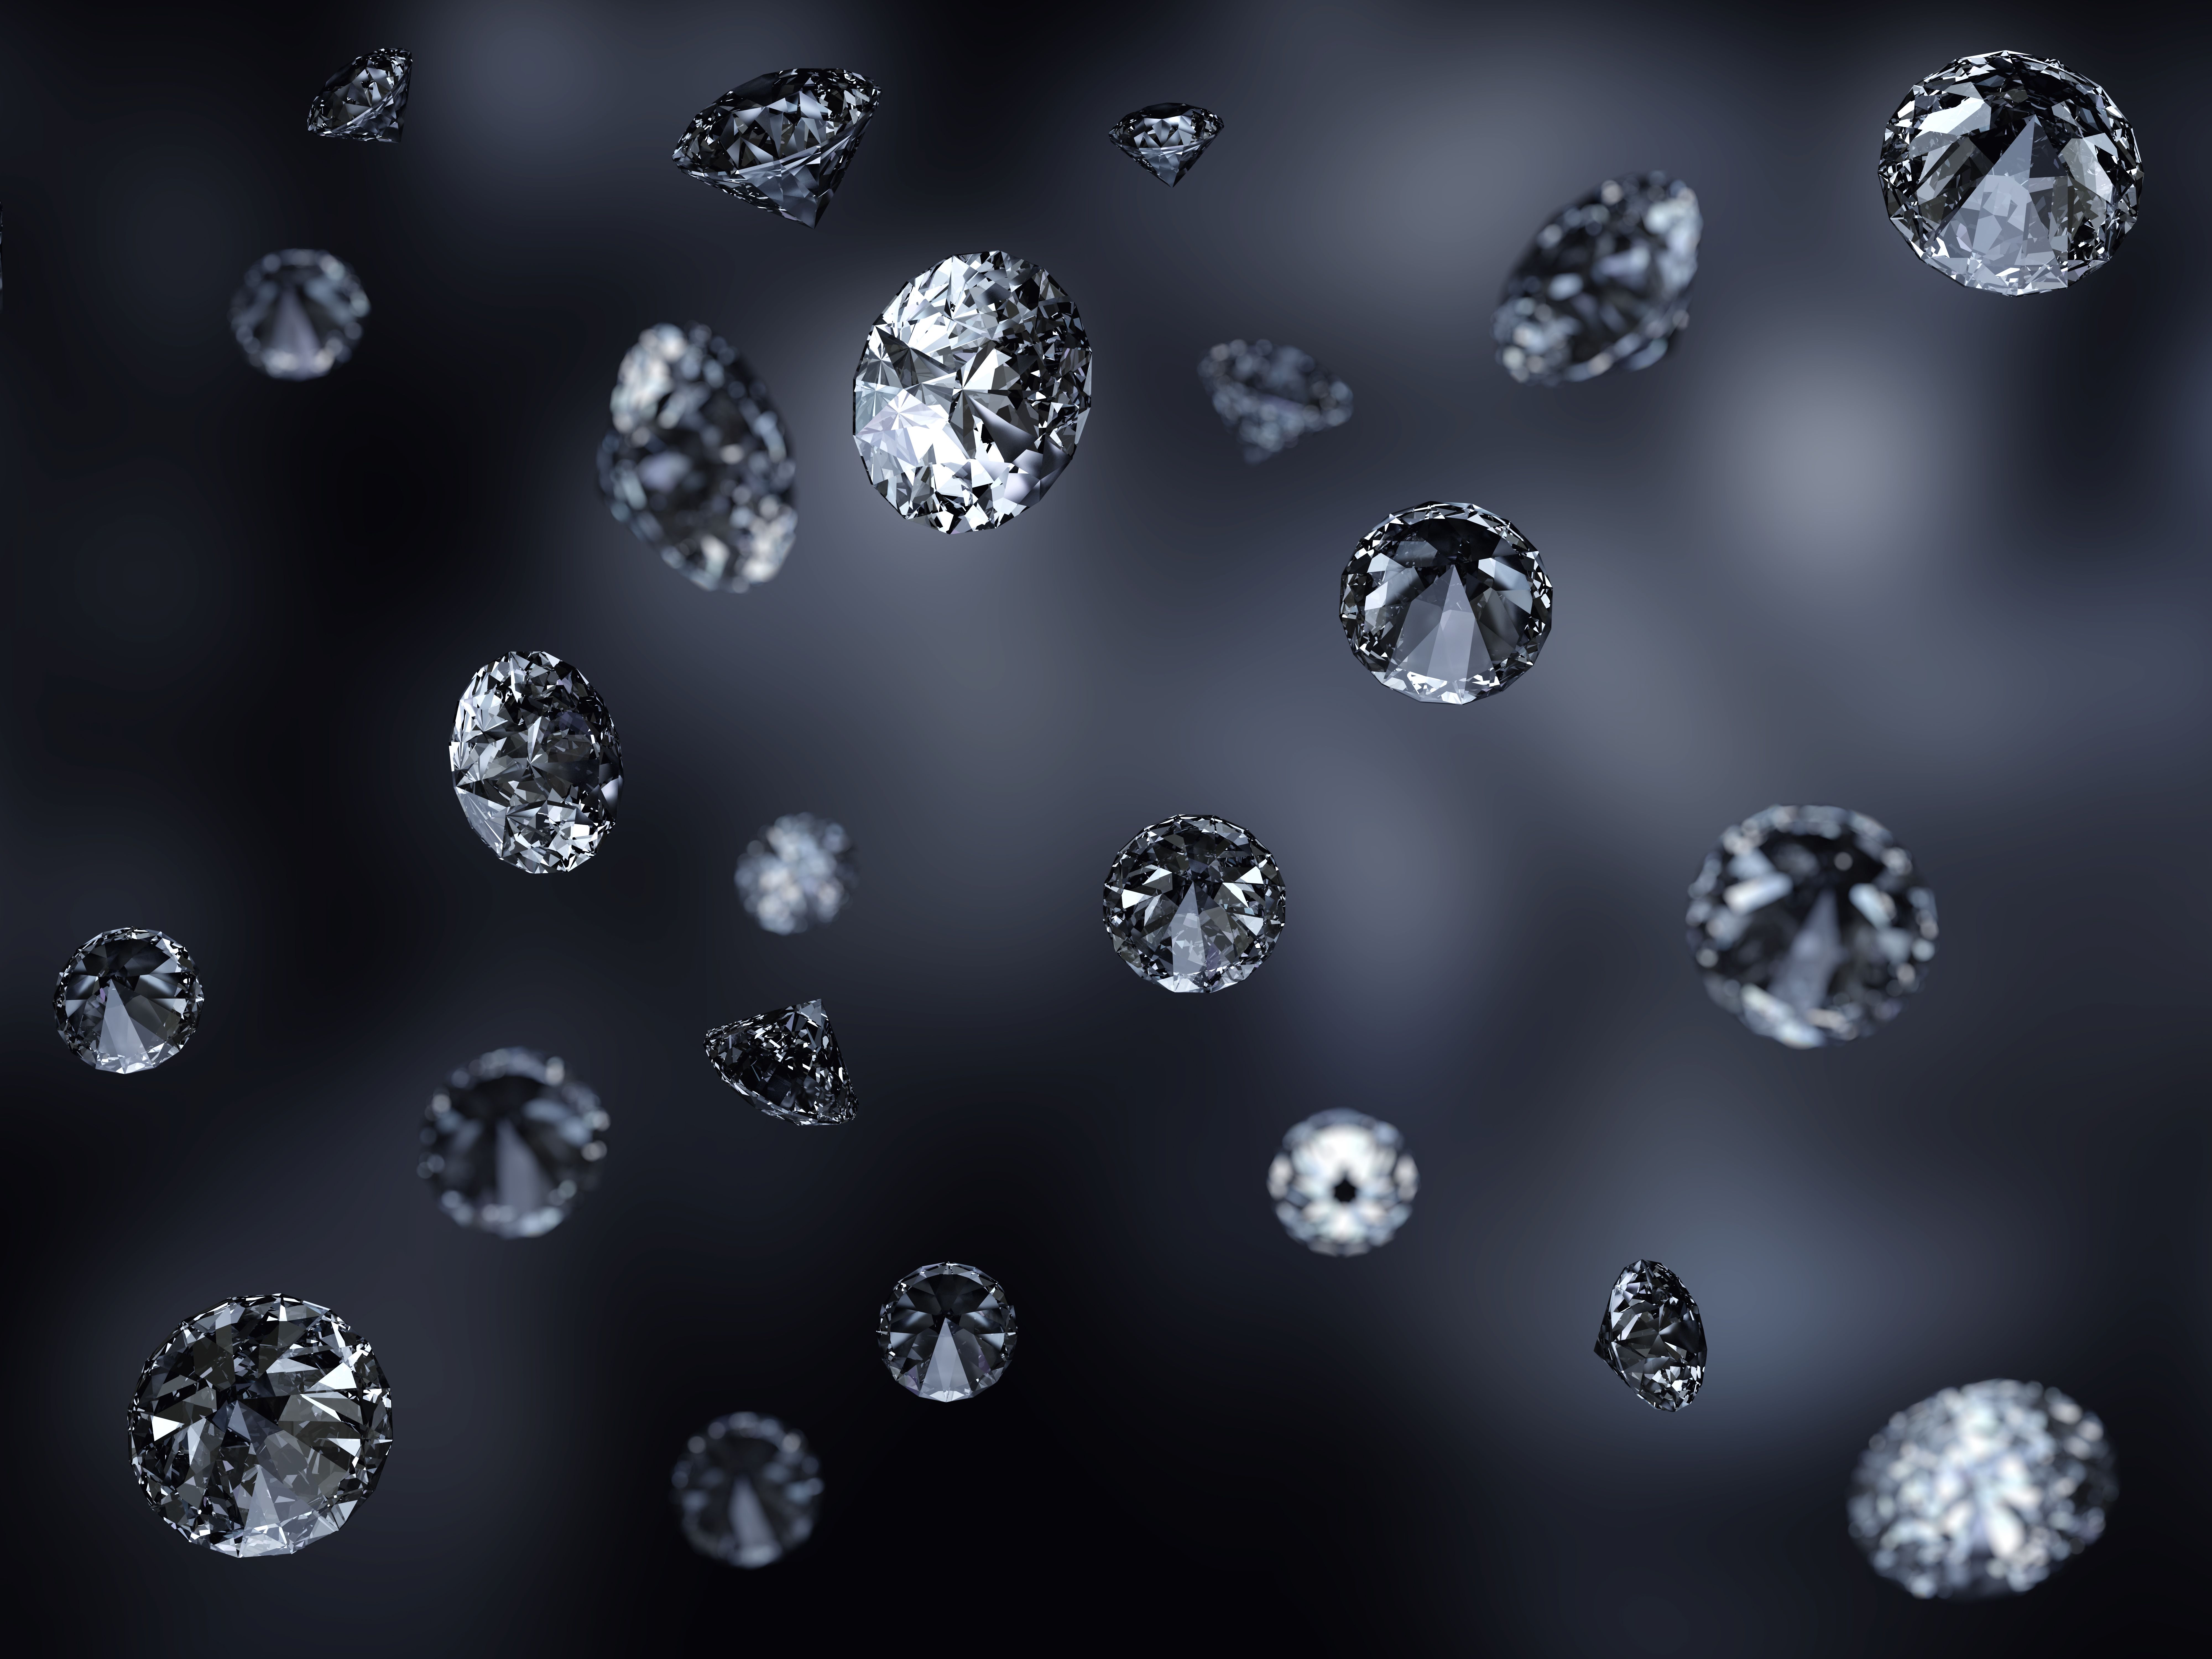  Diamant Hintergrundbild 8000x6000. Download Hintergrundbild makro, schwarzer hintergrund, diamanten die Auflösung 8000x6000